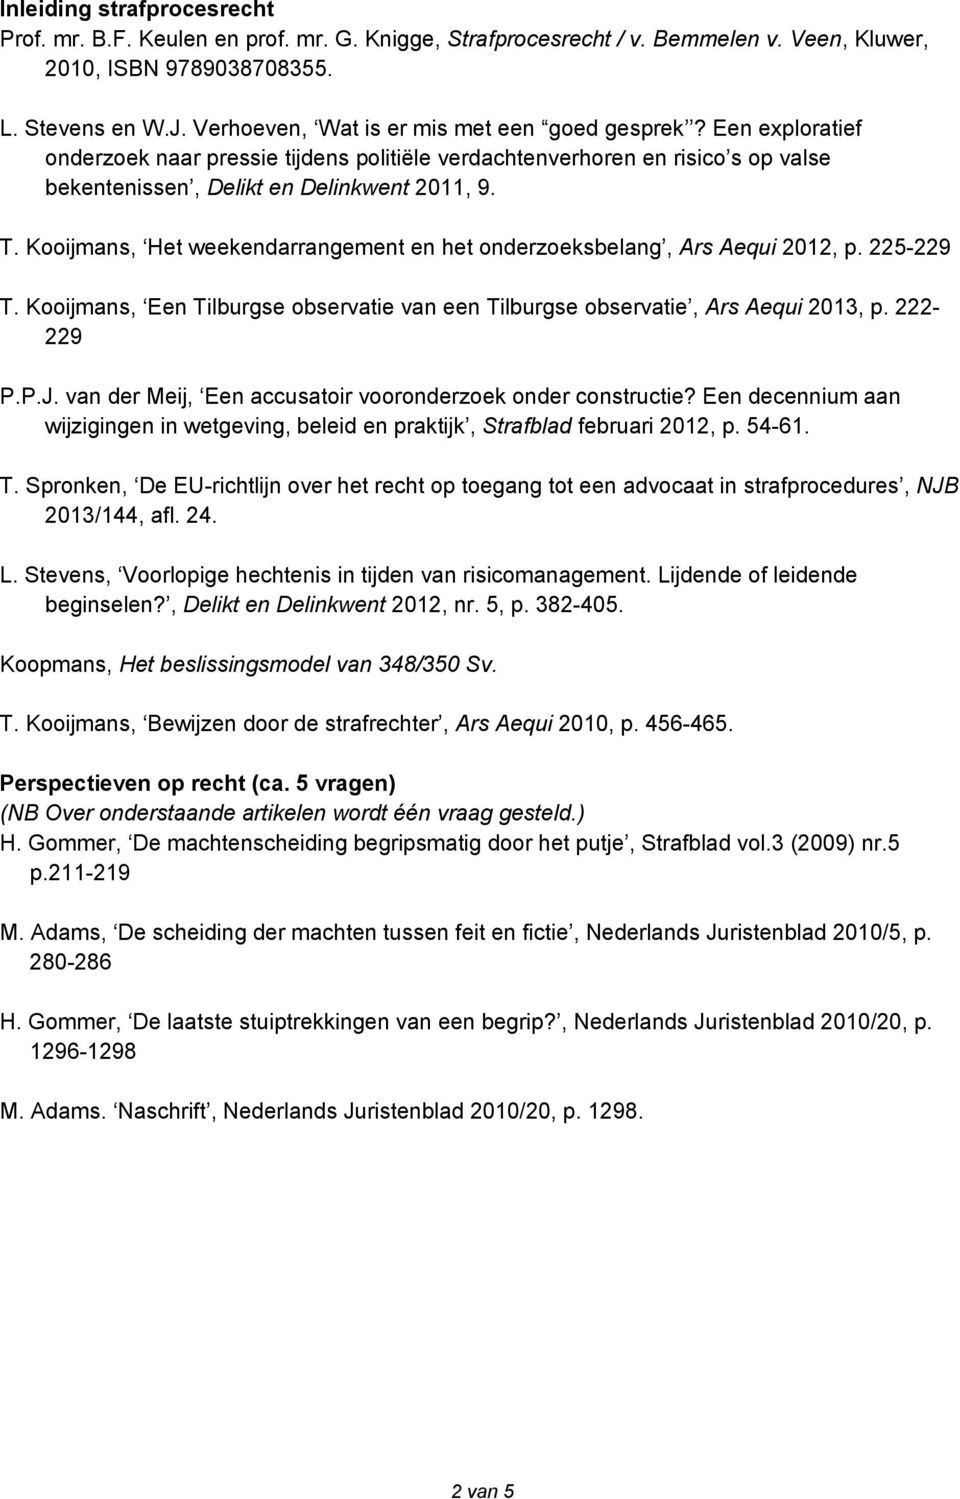 Kooijmans, Het weekendarrangement en het onderzoeksbelang, Ars Aequi 2012, p. 225-229 T. Kooijmans, Een Tilburgse observatie van een Tilburgse observatie, Ars Aequi 2013, p. 222-229 P.P.J.